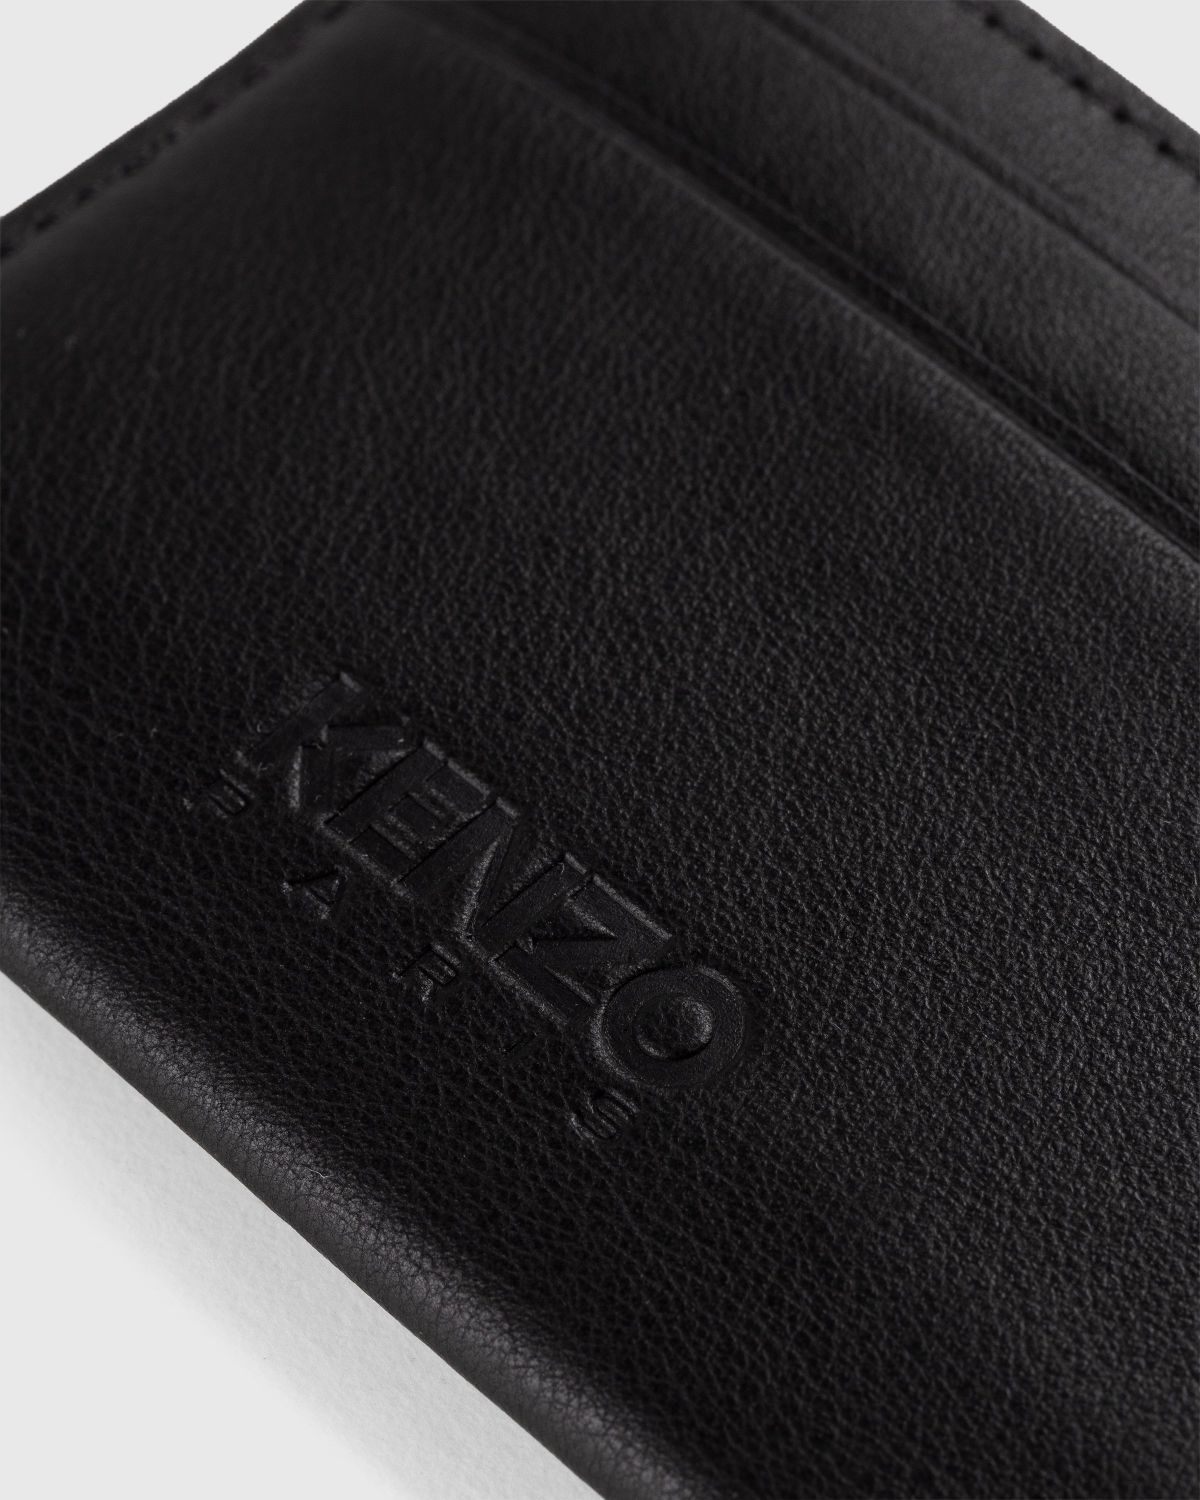 Kenzo – Crest Cardholder Black - Card Holders - Black - Image 5